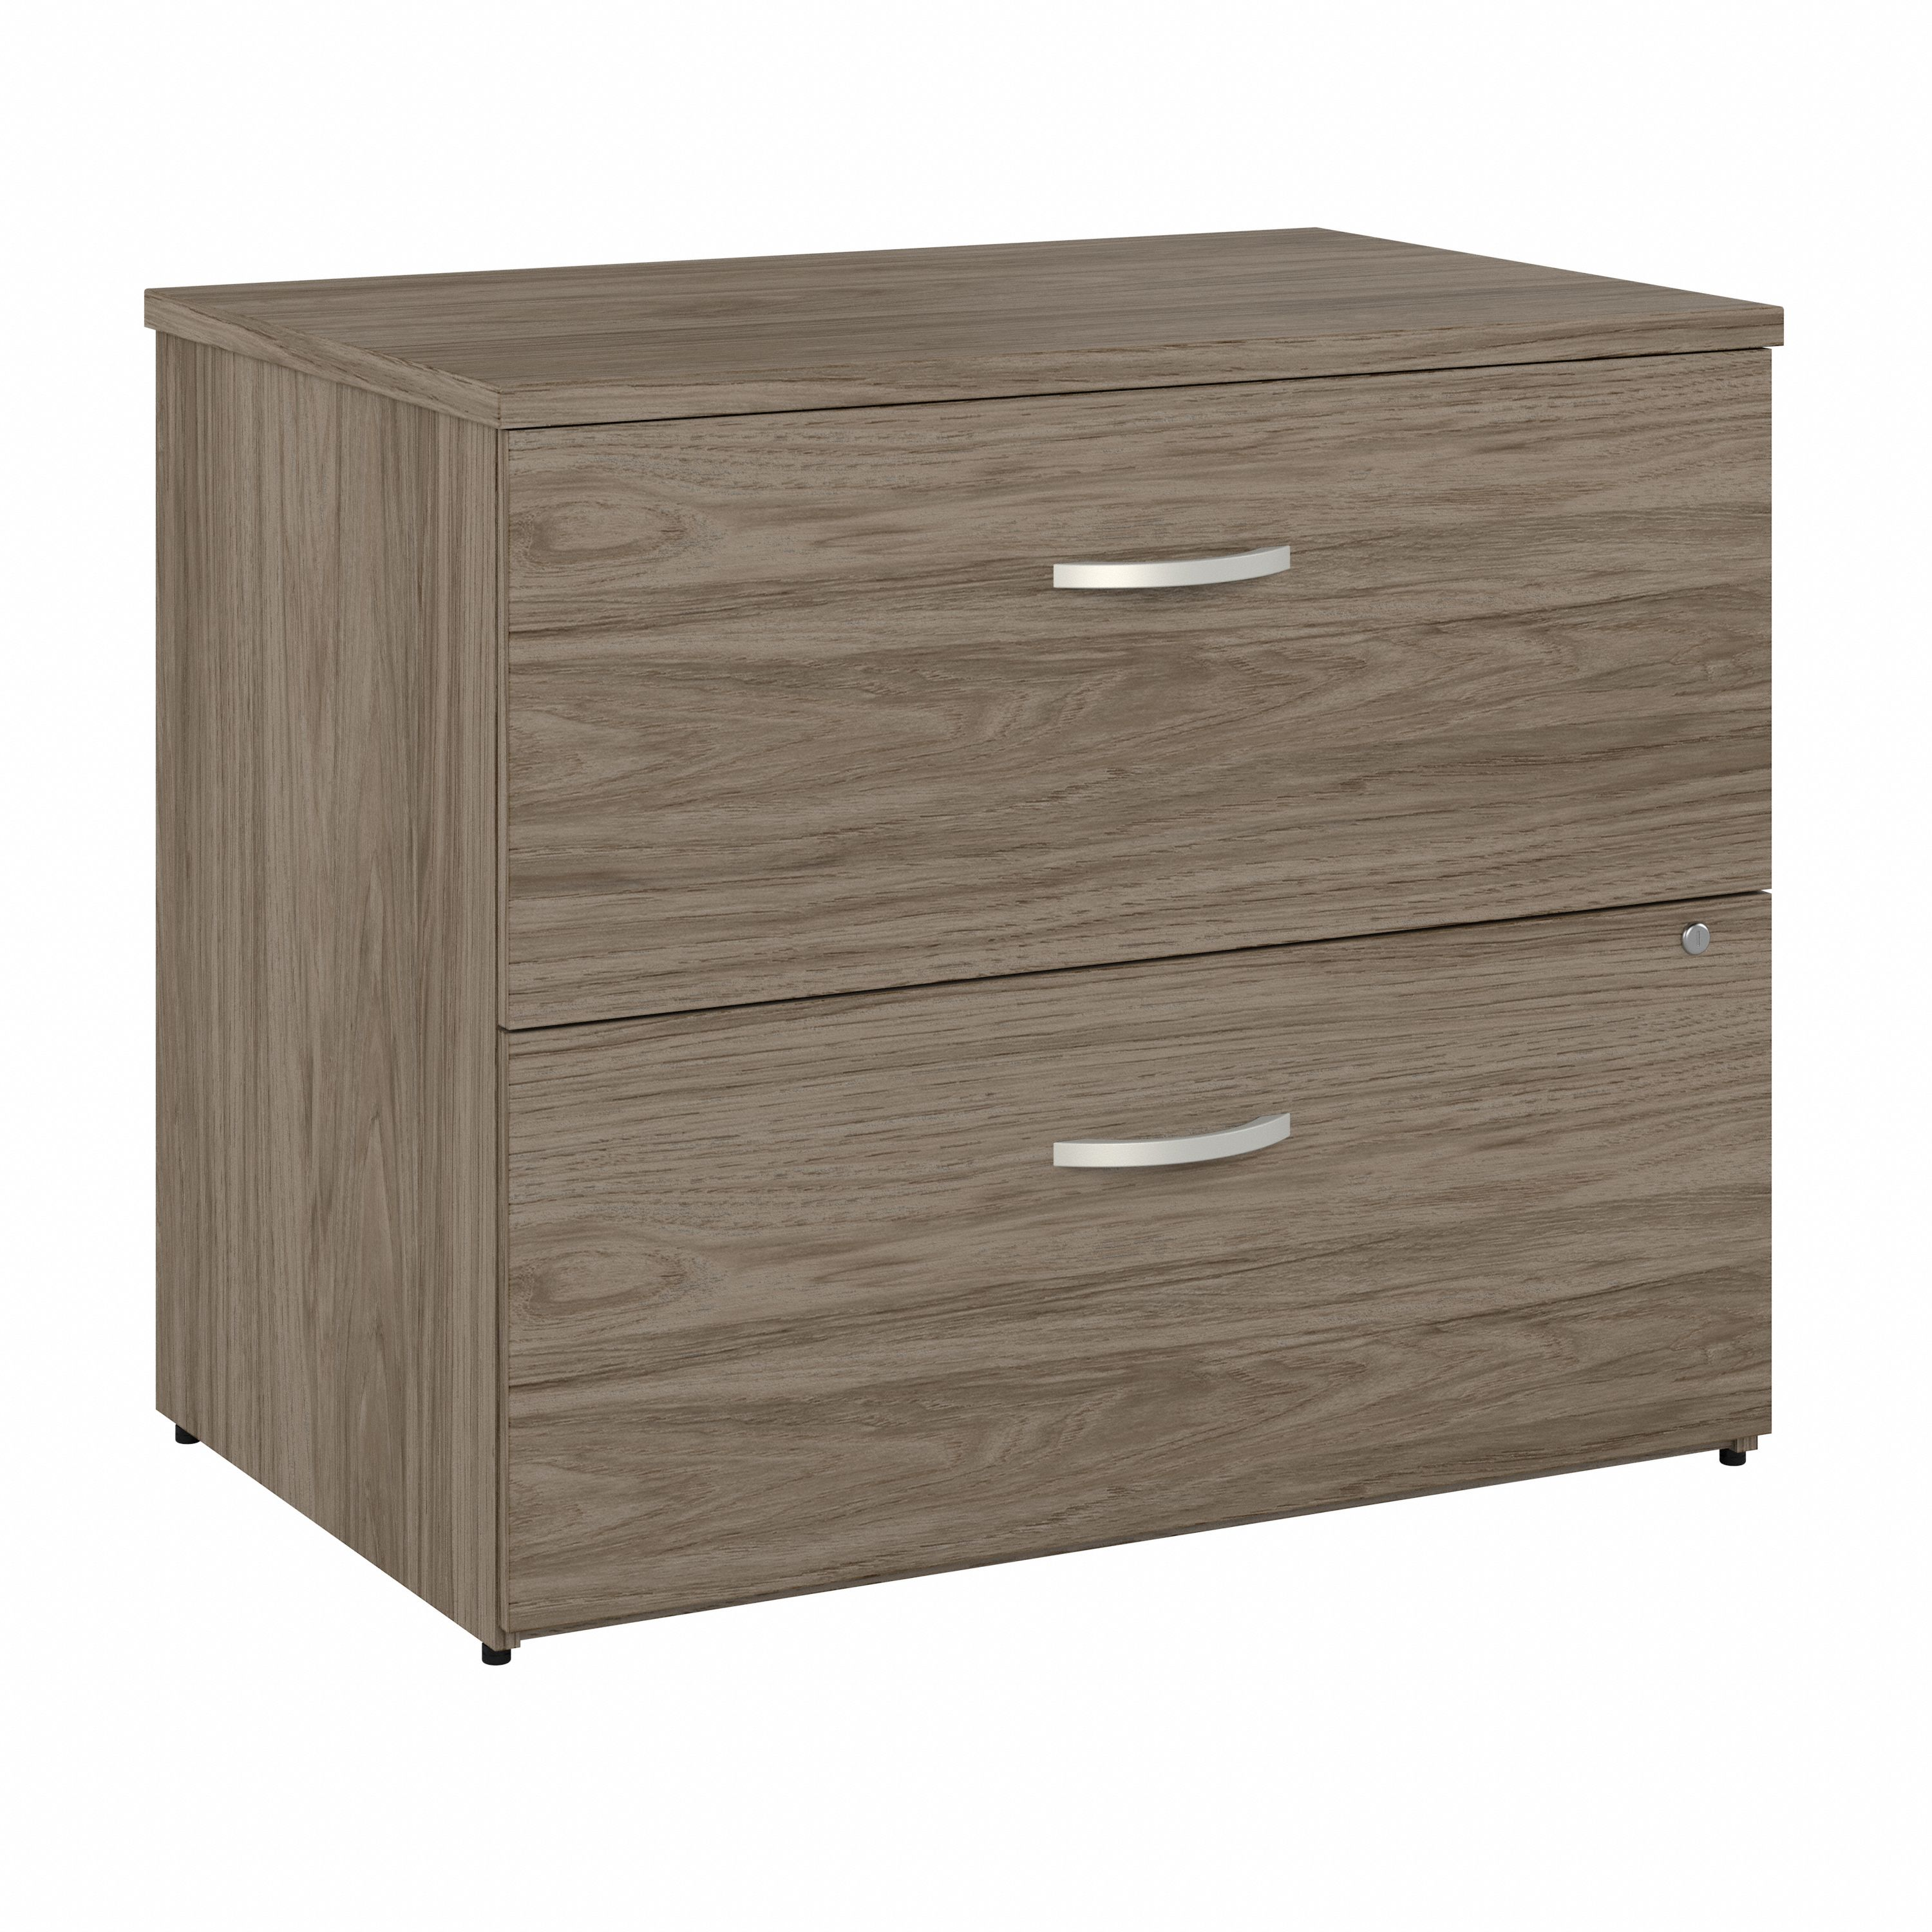 Shop Bush Business Furniture Studio C 2 Drawer Lateral File Cabinet 02 SCF136MHSU #color_modern hickory